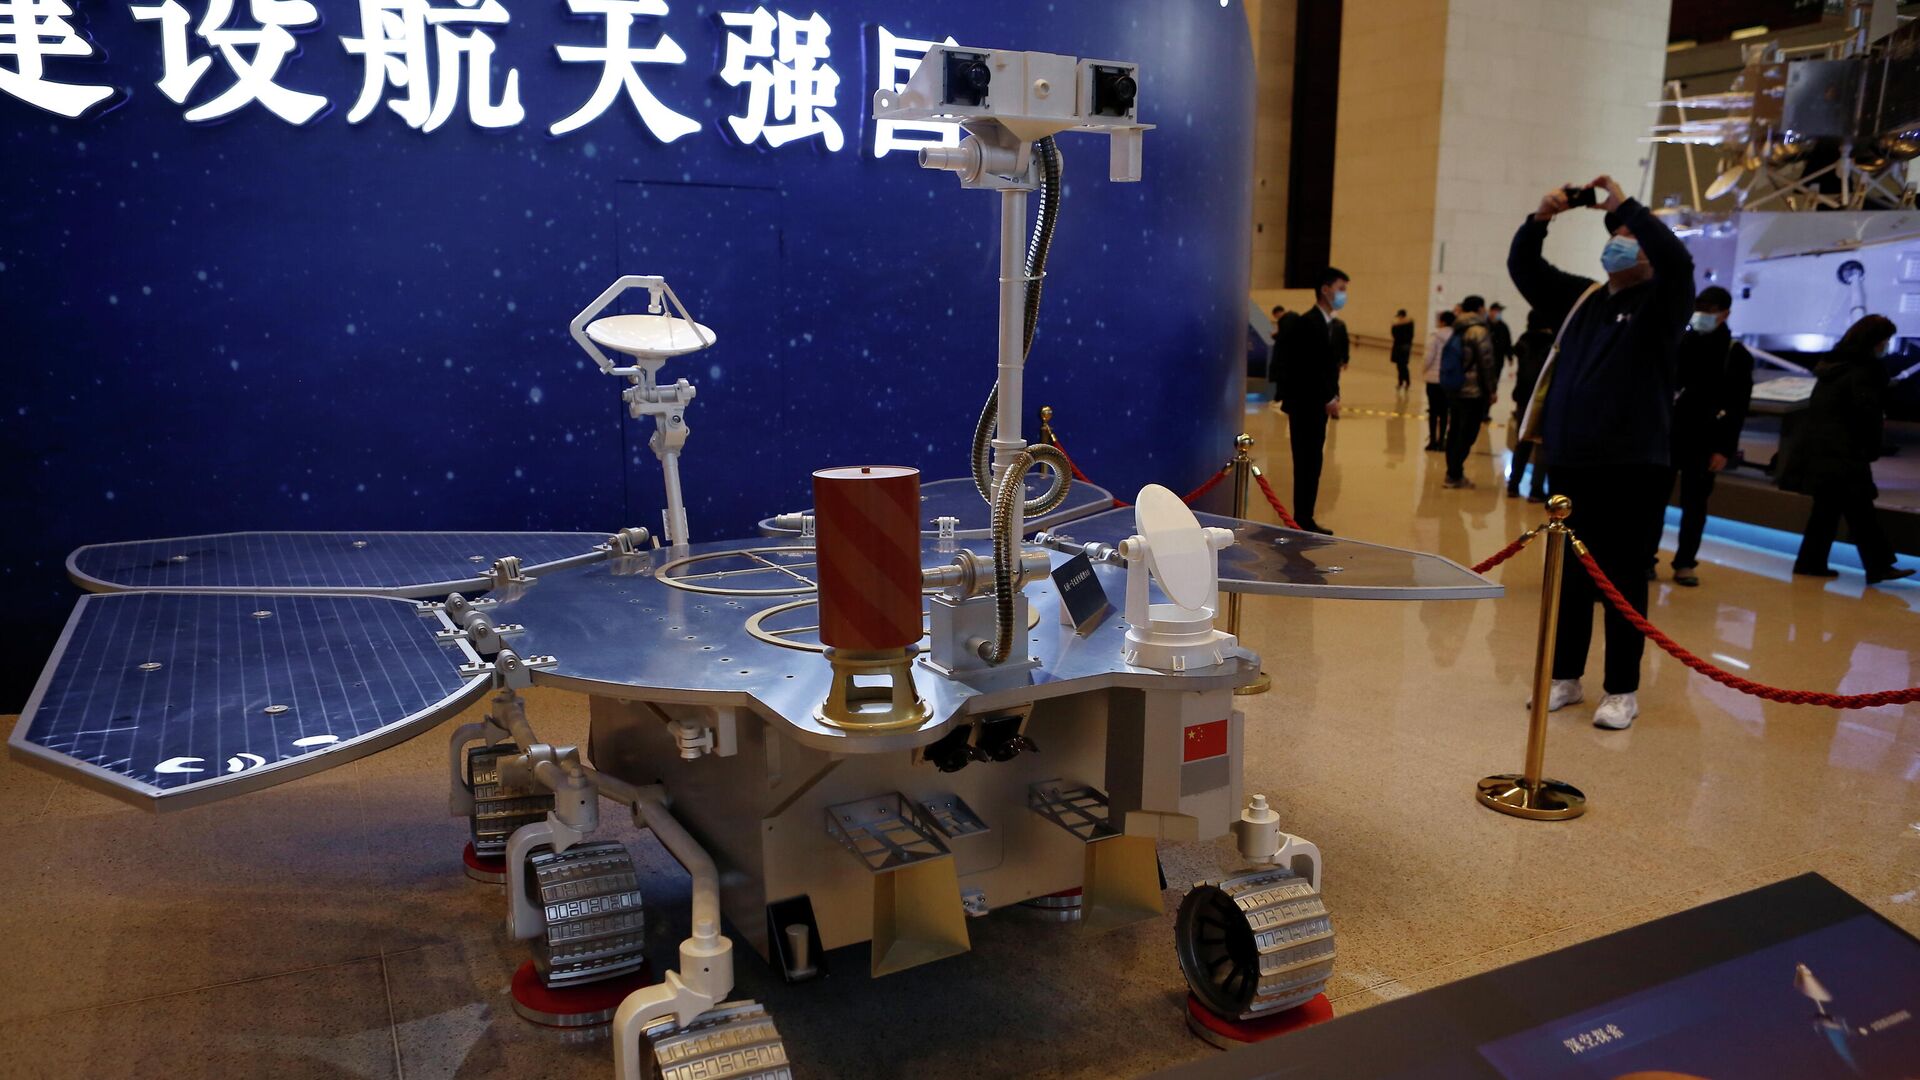 Точная копия марсохода Тяньвэнь-1 выставлена на выставке в Национальном музее Пекина - РИА Новости, 1920, 04.03.2021